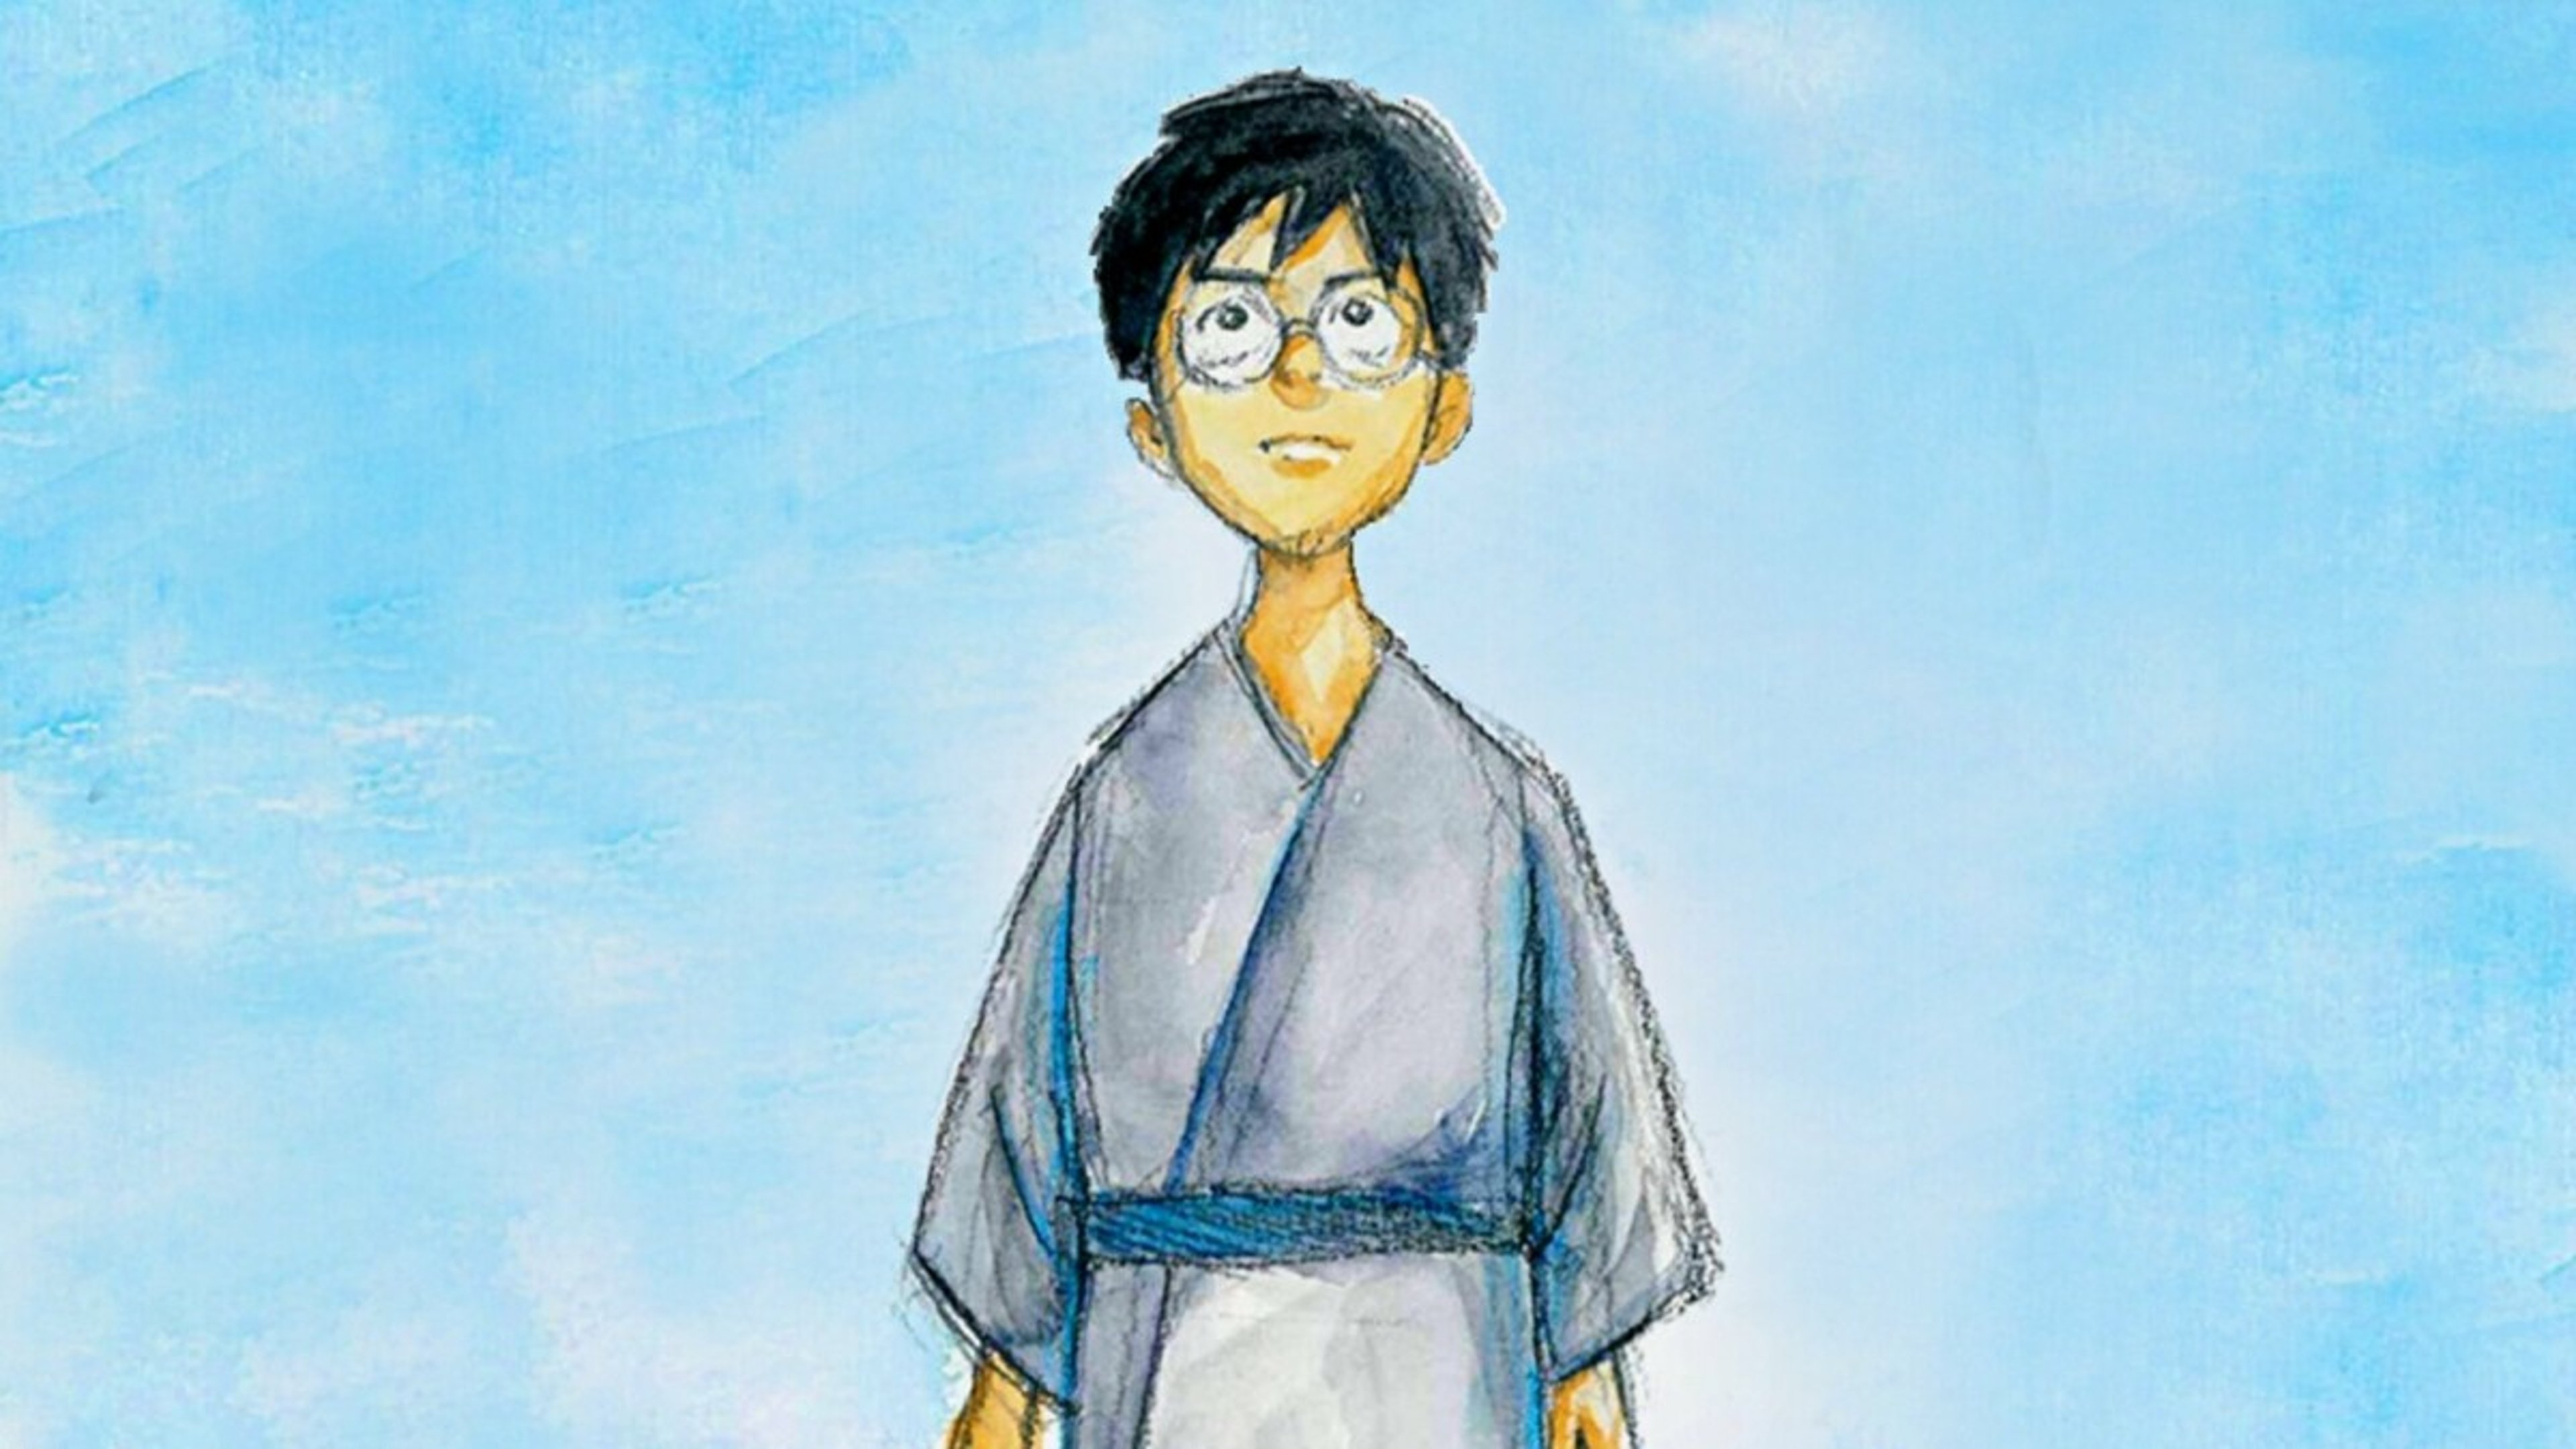 Il ragazzo e l’airone: ecco quando esce il film di Miyazaki